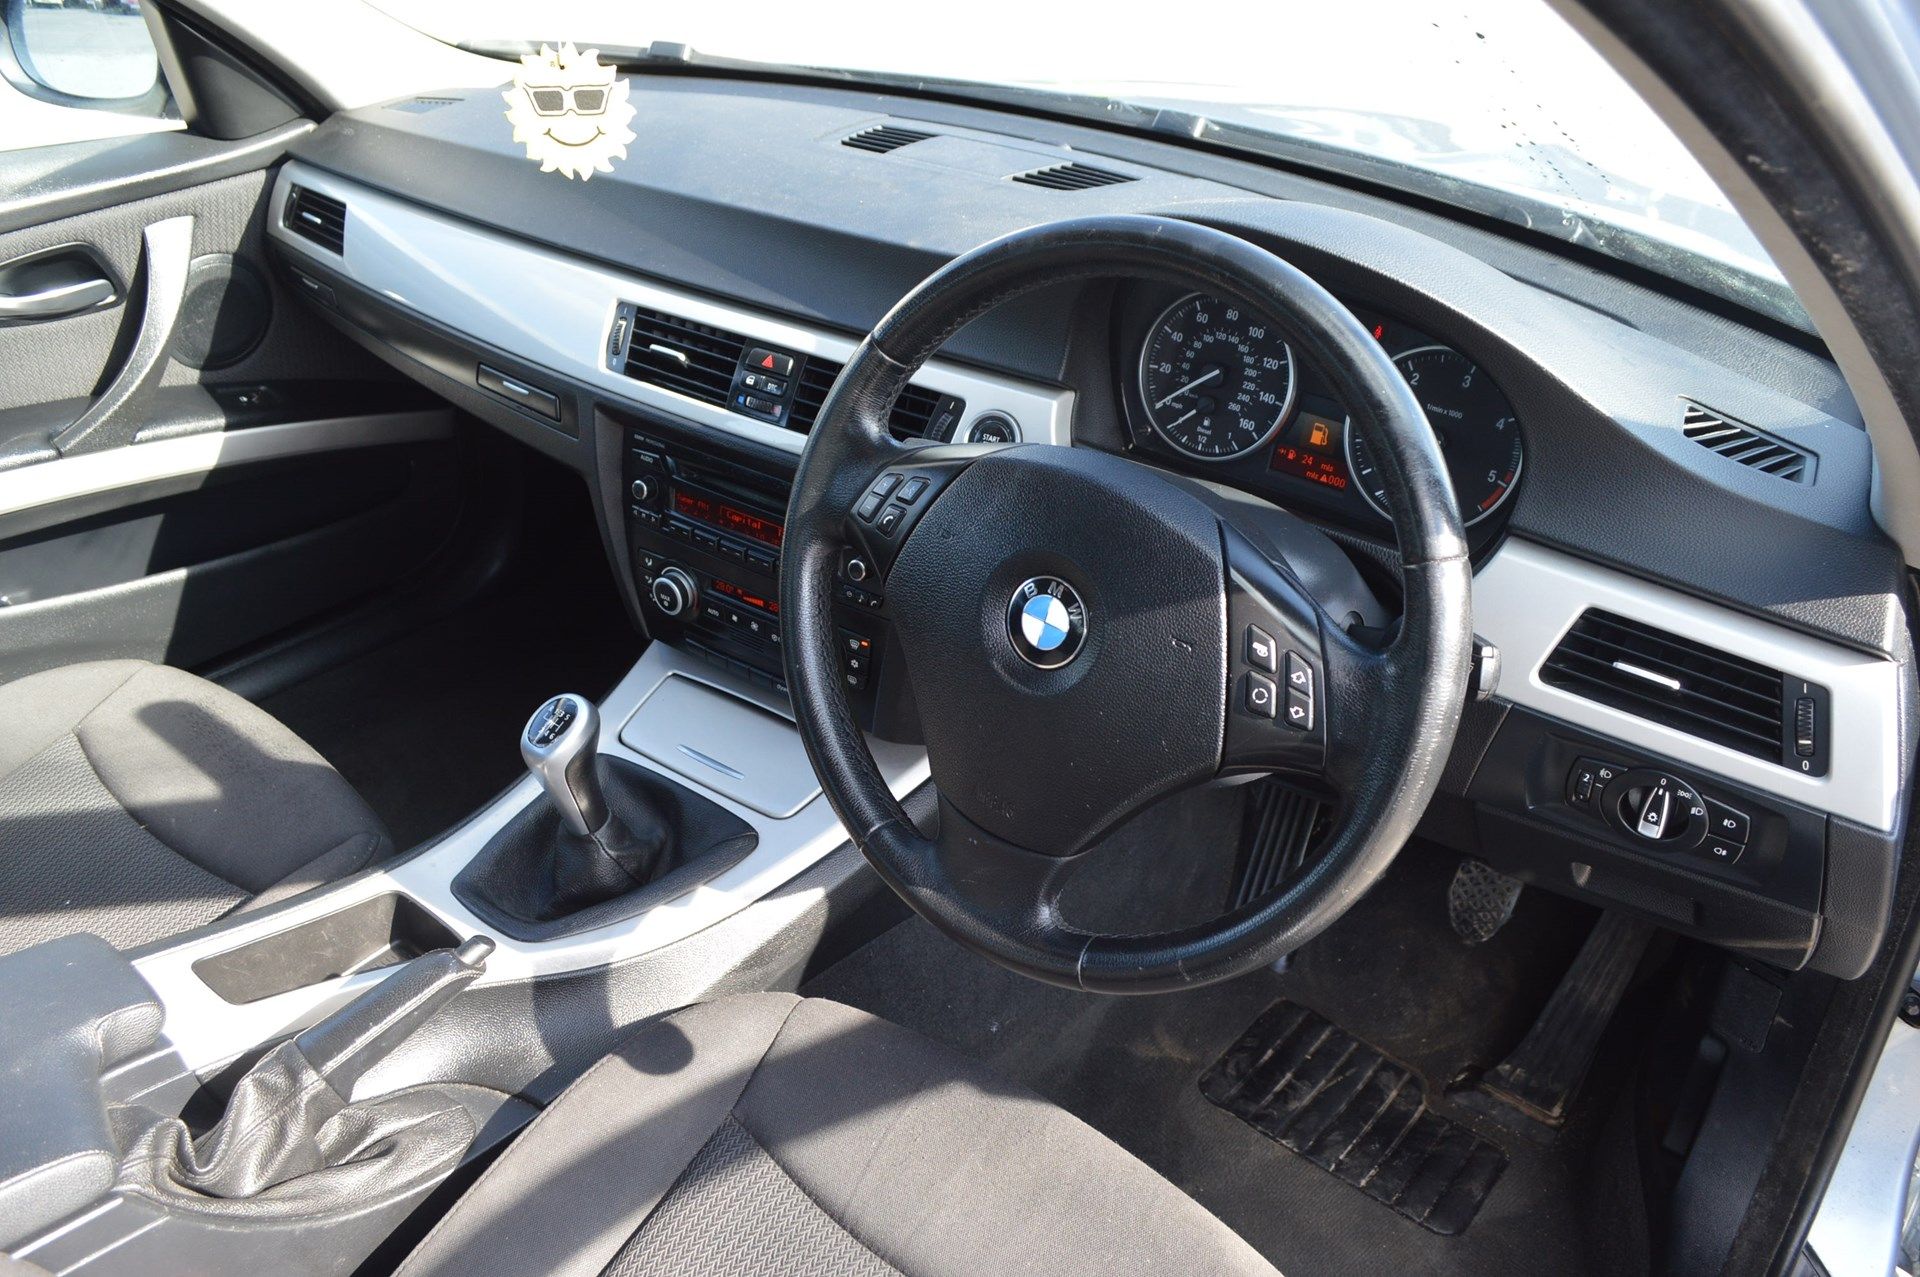 2008/58 REG BMW 318D SE BLUE DIESEL 4 DOOR SALOON, 6 SPEED MANUAL GEARBOX *NO VAT* - Image 20 of 27